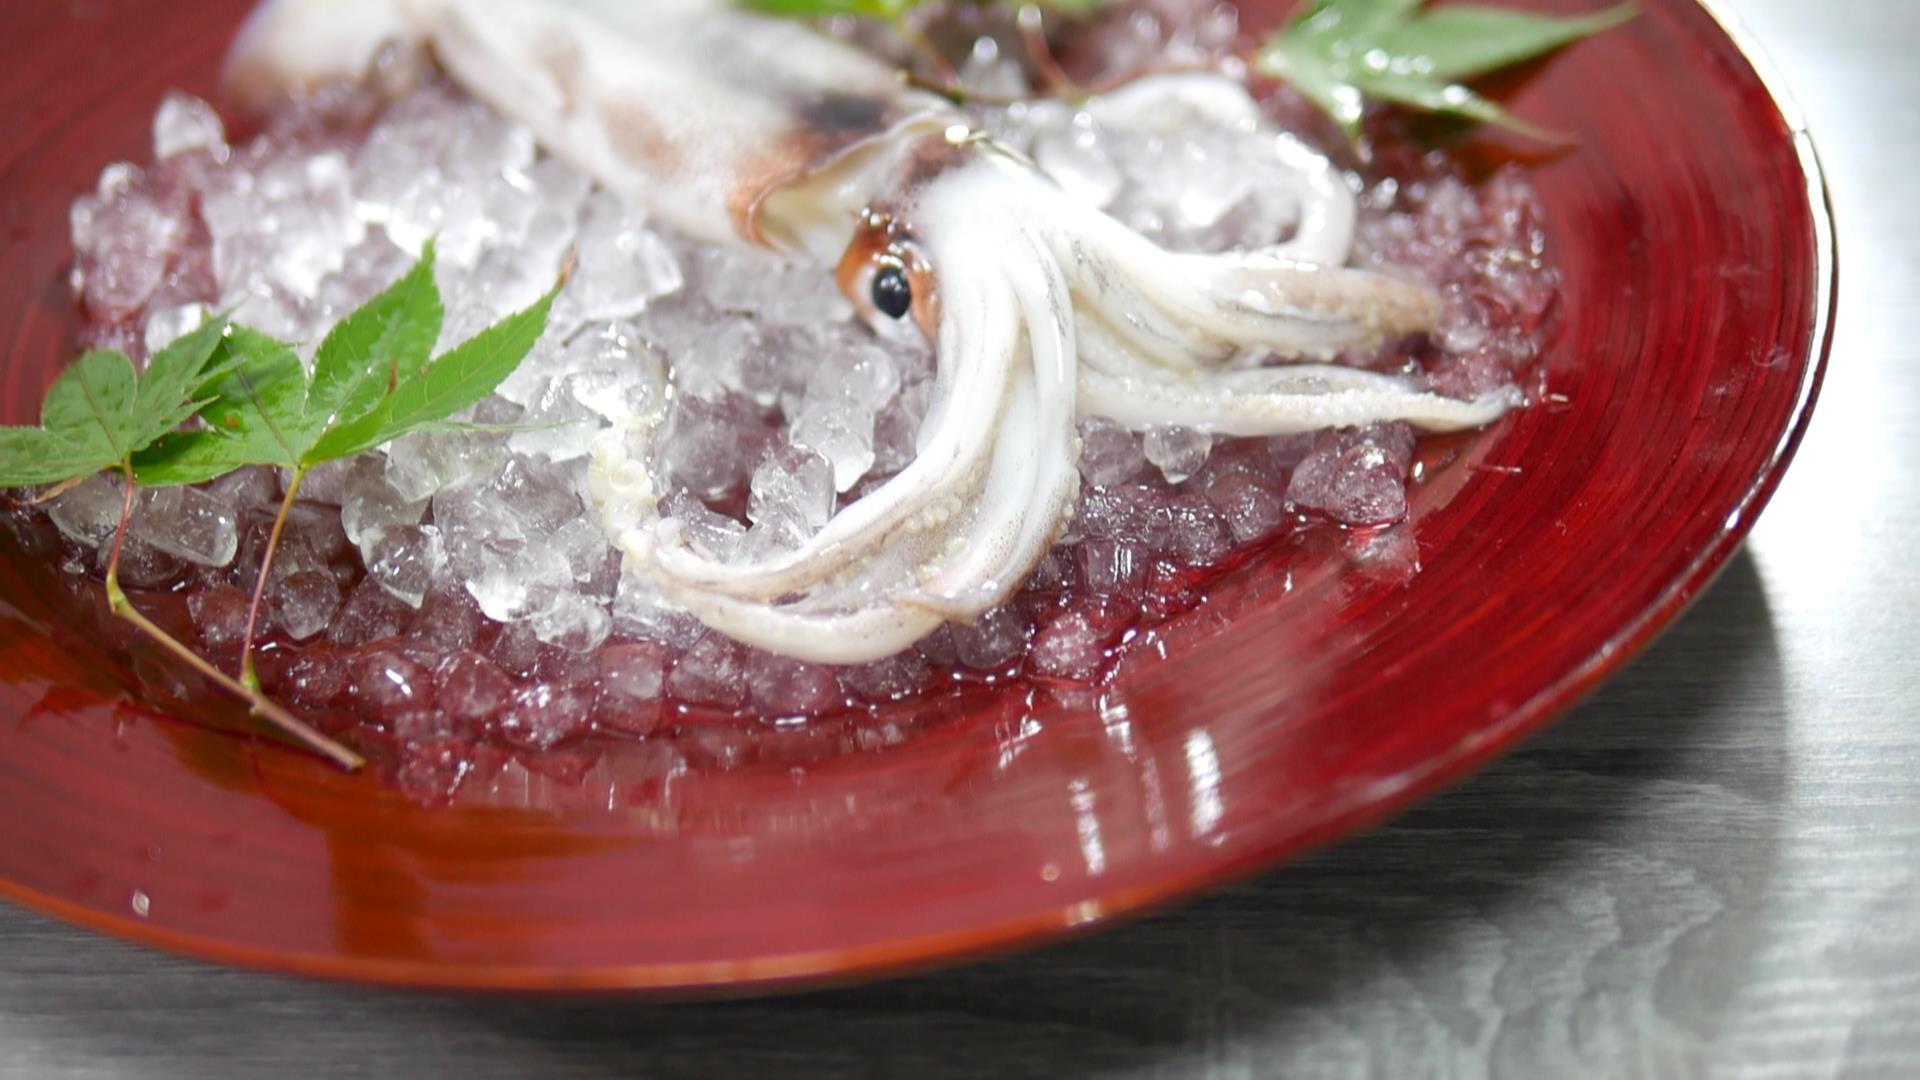 イカのさばき方と刺身の切り方 田中ケンのプロが作る簡単レシピ集と料理の作り方 ケンズキッチン